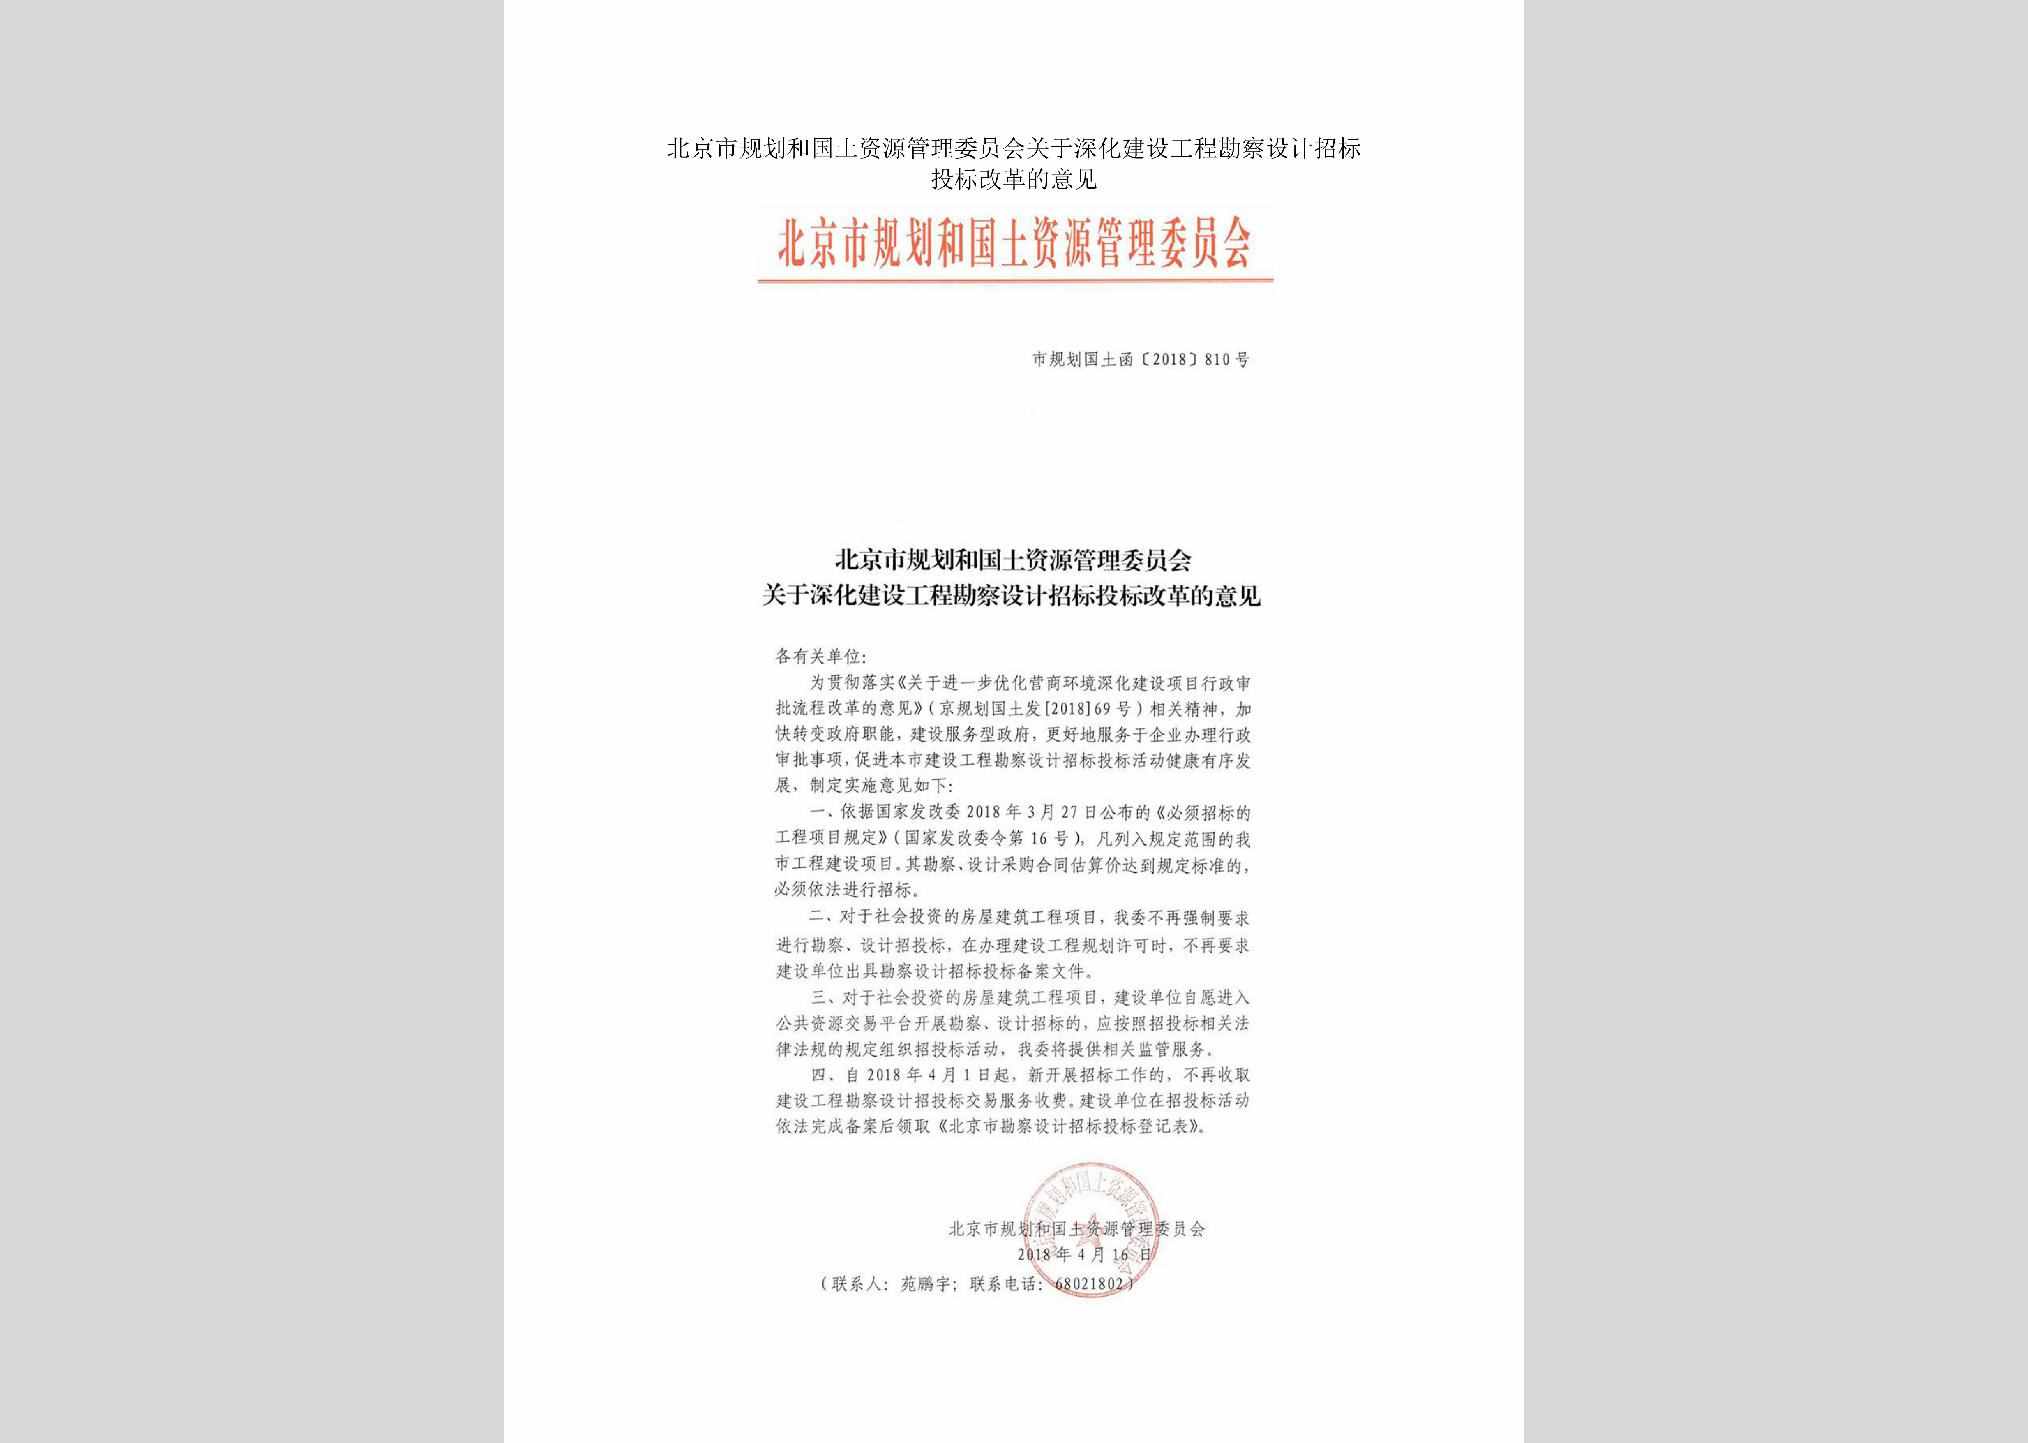 市规划国土函[2018]810号：北京市规划和国土资源管理委员会关于深化建设工程勘察设计招标投标改革的意见